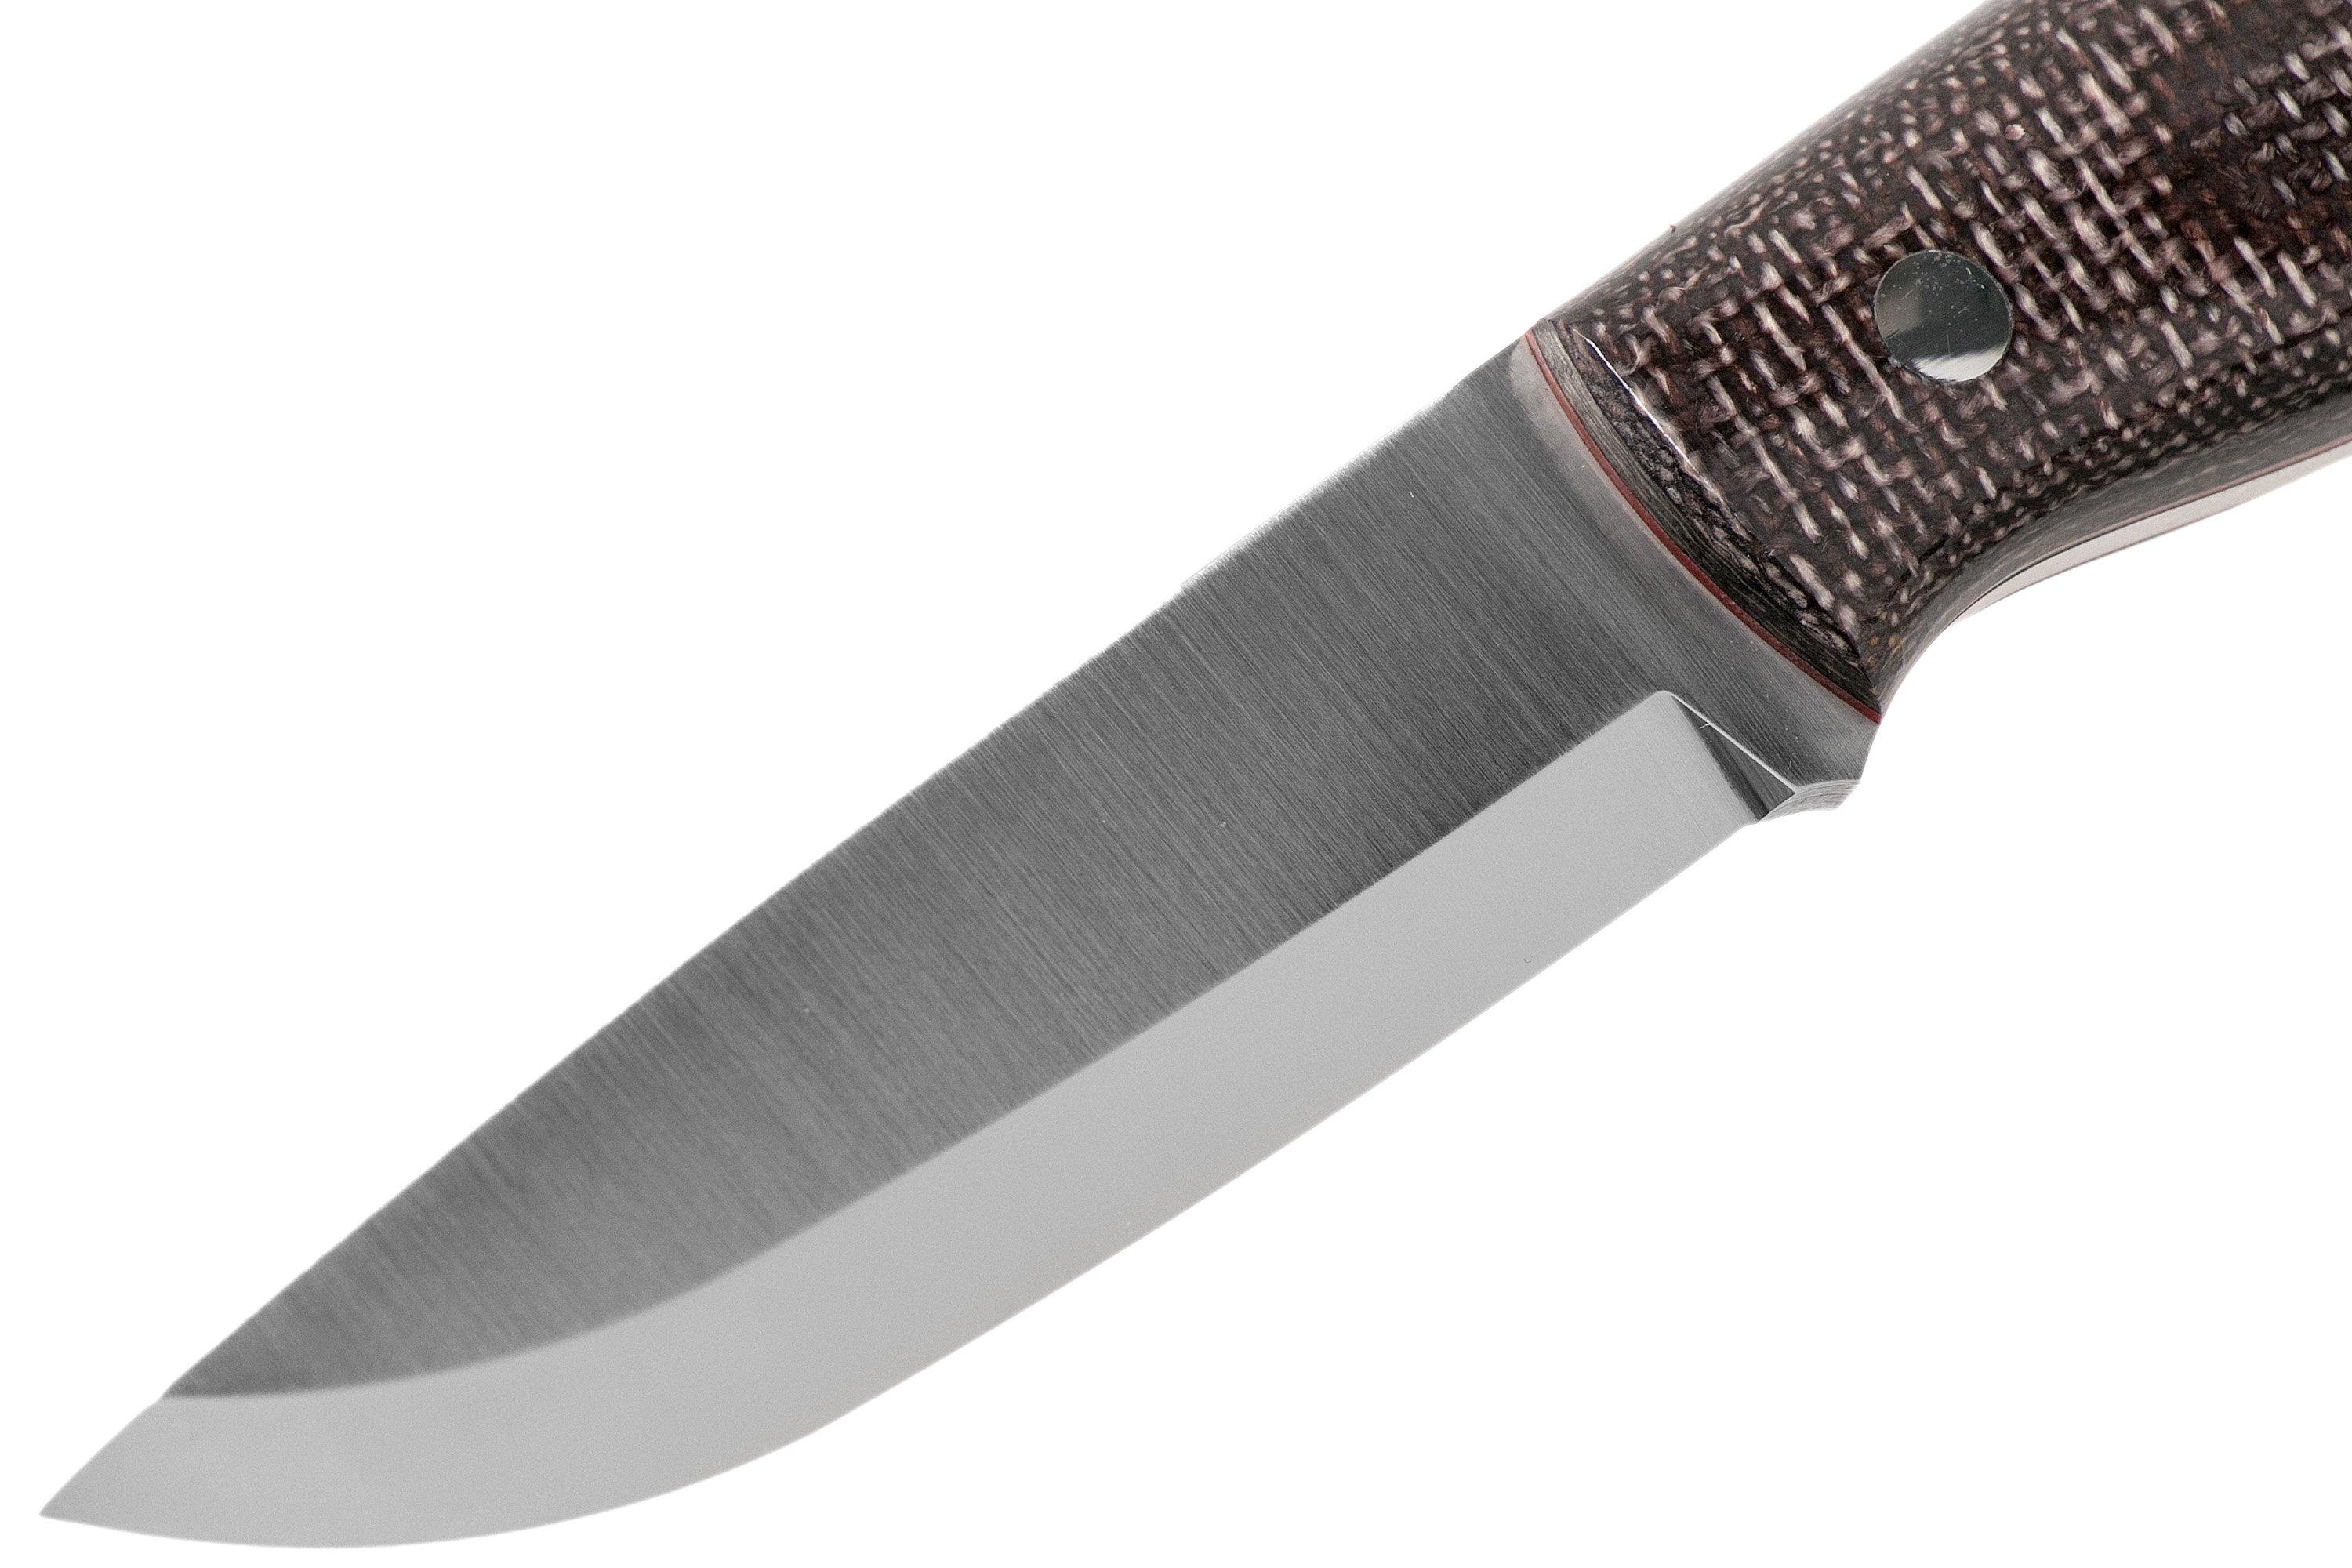 NKD2021 03 Nordic Knife Design